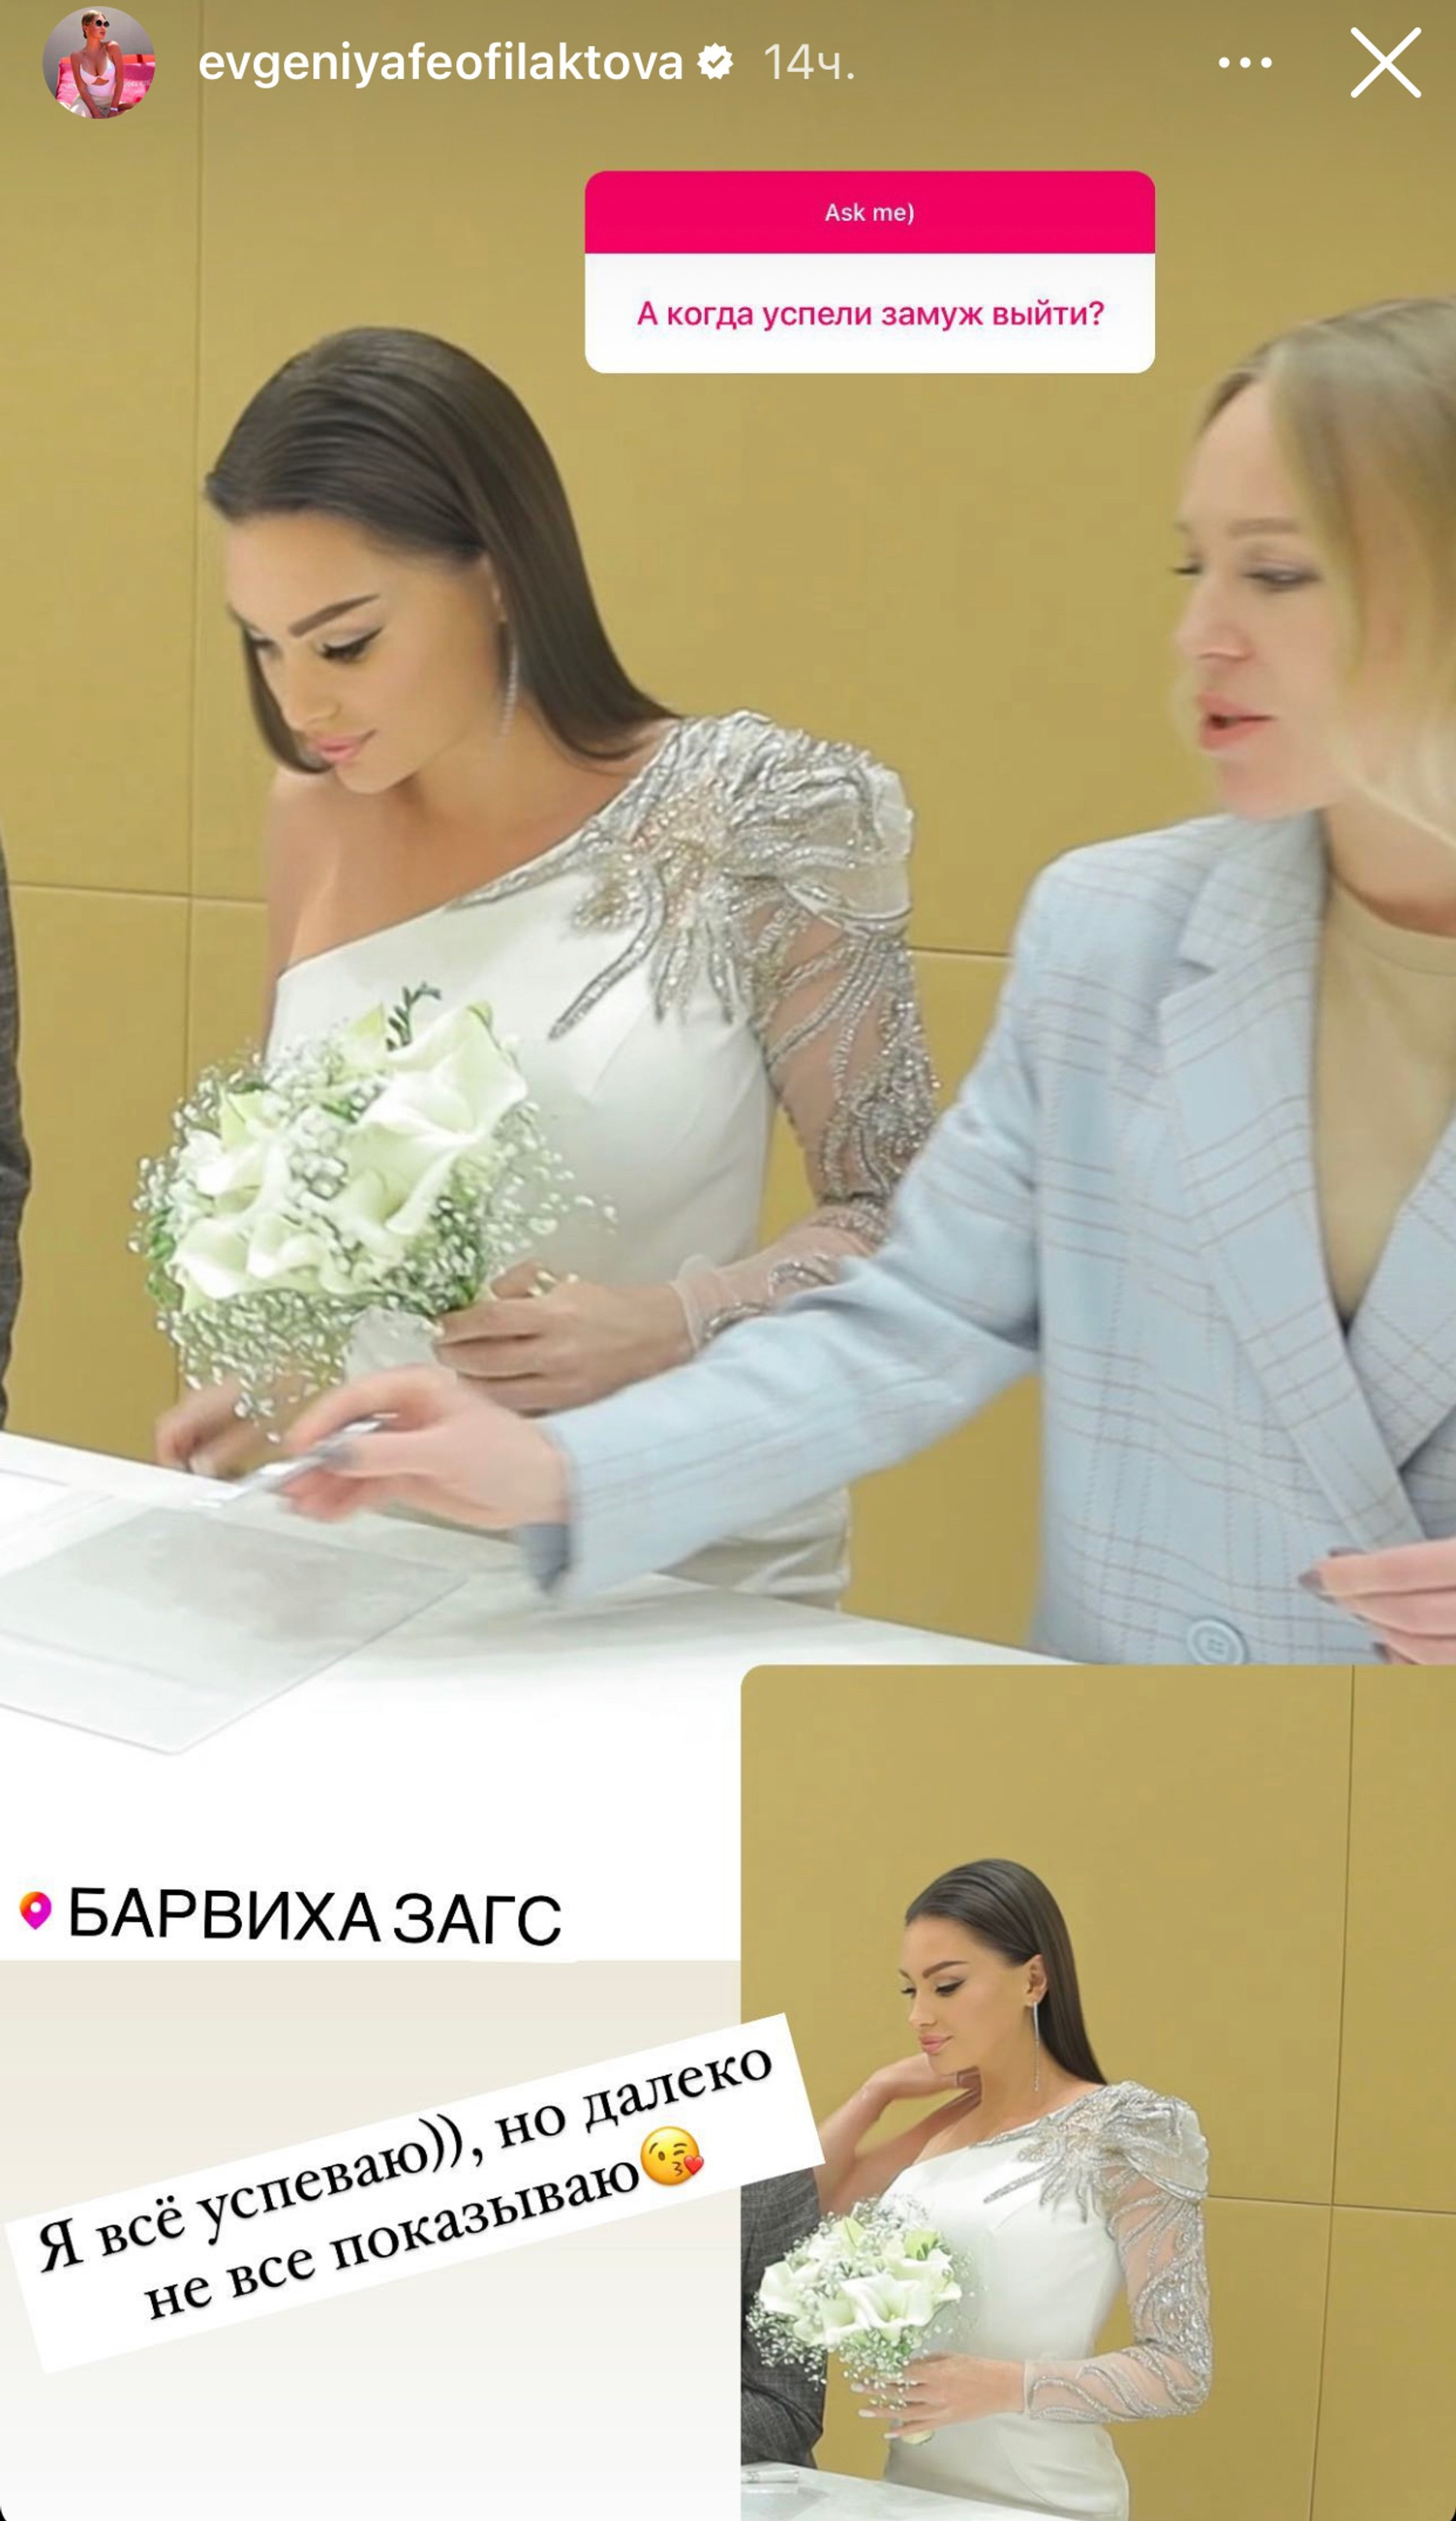 Евгения Феофилактова призналась, что несколько лет назад во второй раз вышла замуж
Фото: Инстаграм (запрещен в РФ) @evgeniafeofilaktova